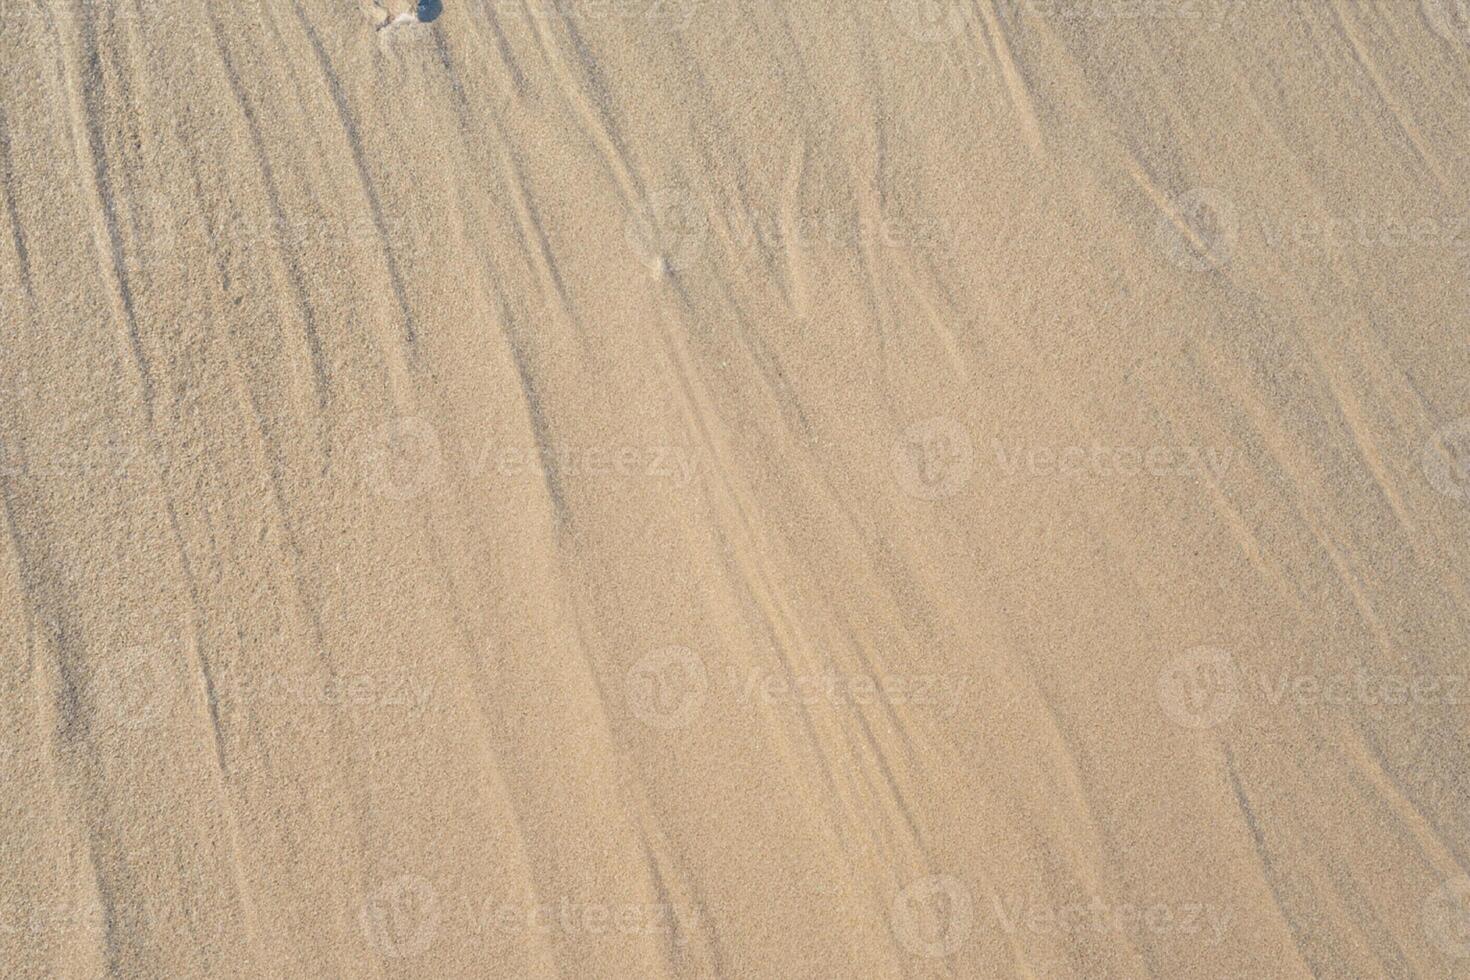 horizonte refugio aéreo serenidad capturas hermosa playa arena desde arriba, un tranquilo tapiz de costero belleza foto